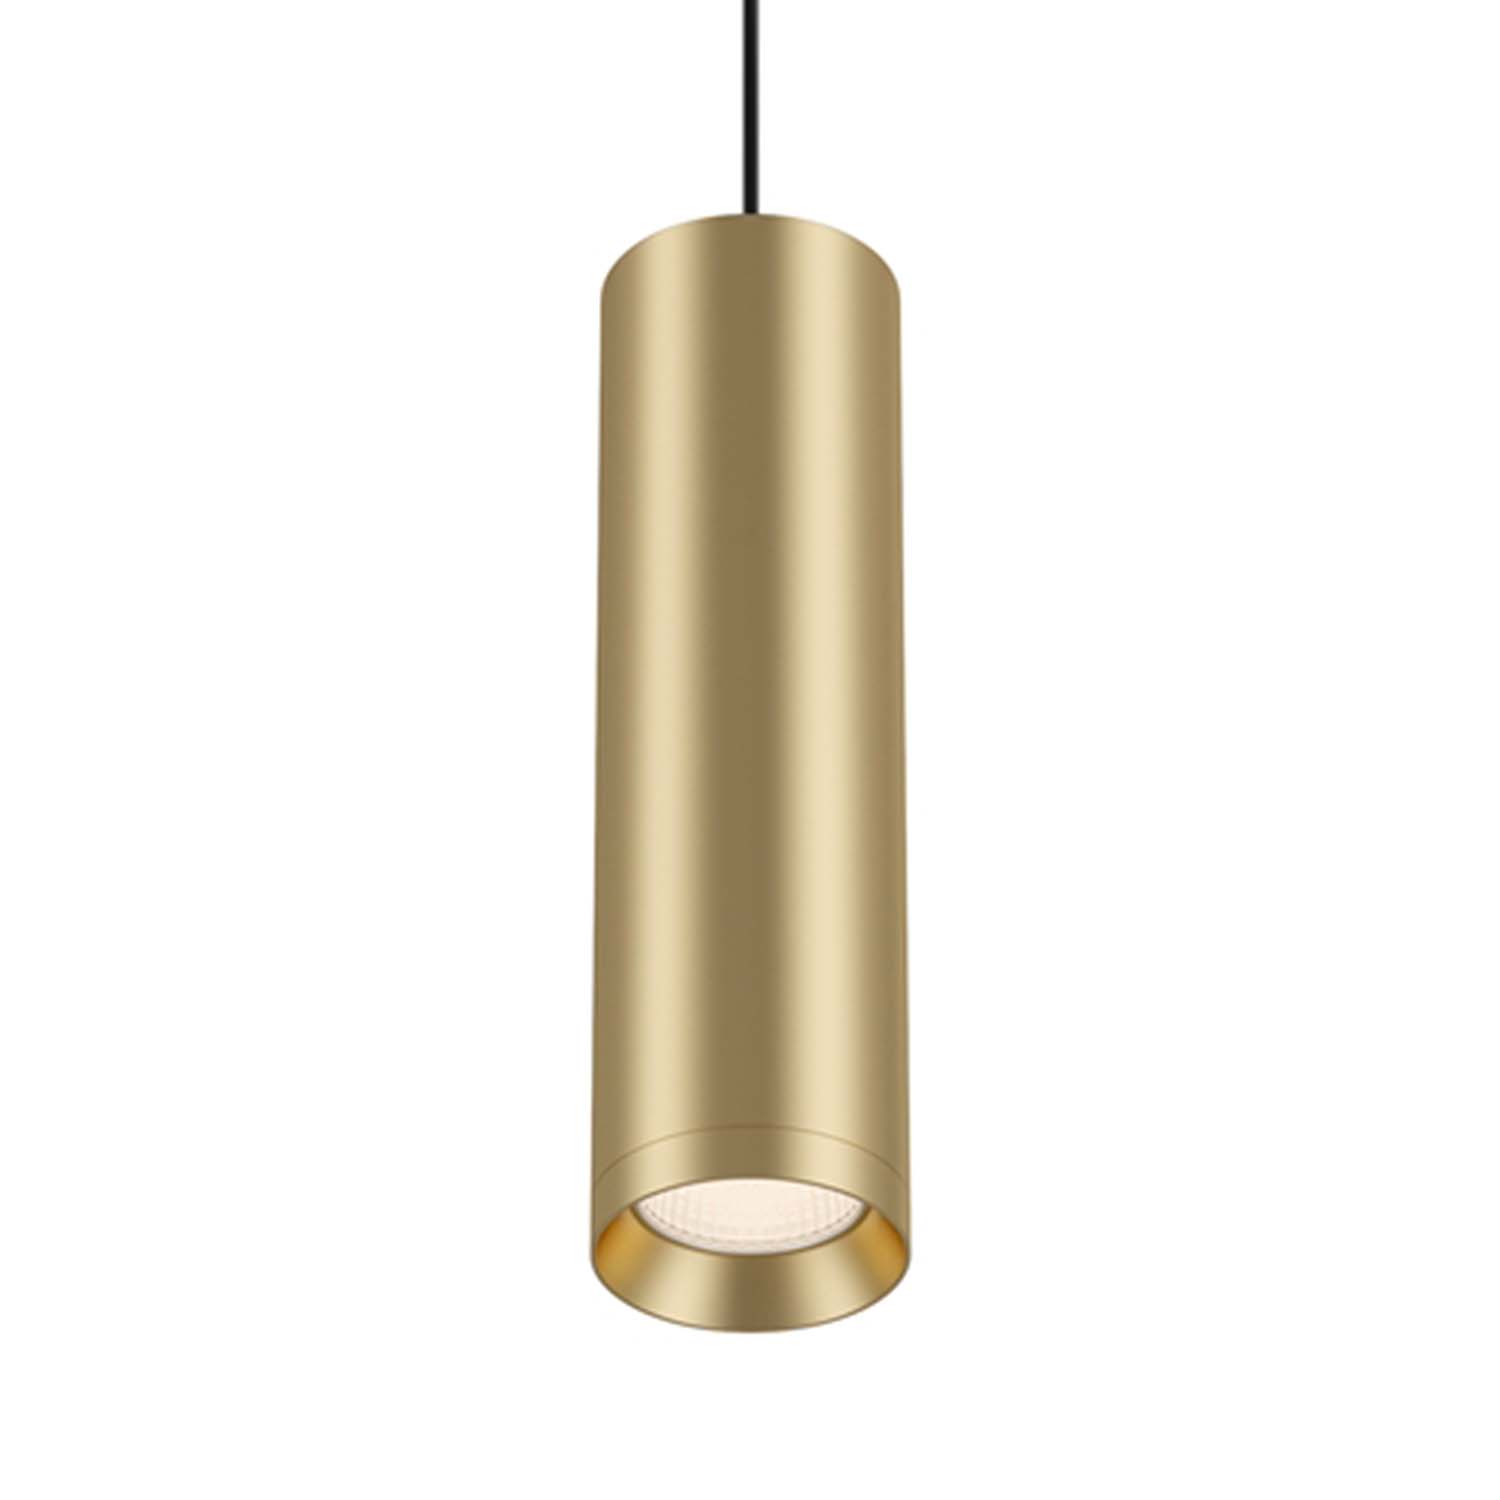 SHELBY – Zylindrische Pendelleuchte aus goldenem, weißem oder schwarzem Stahl